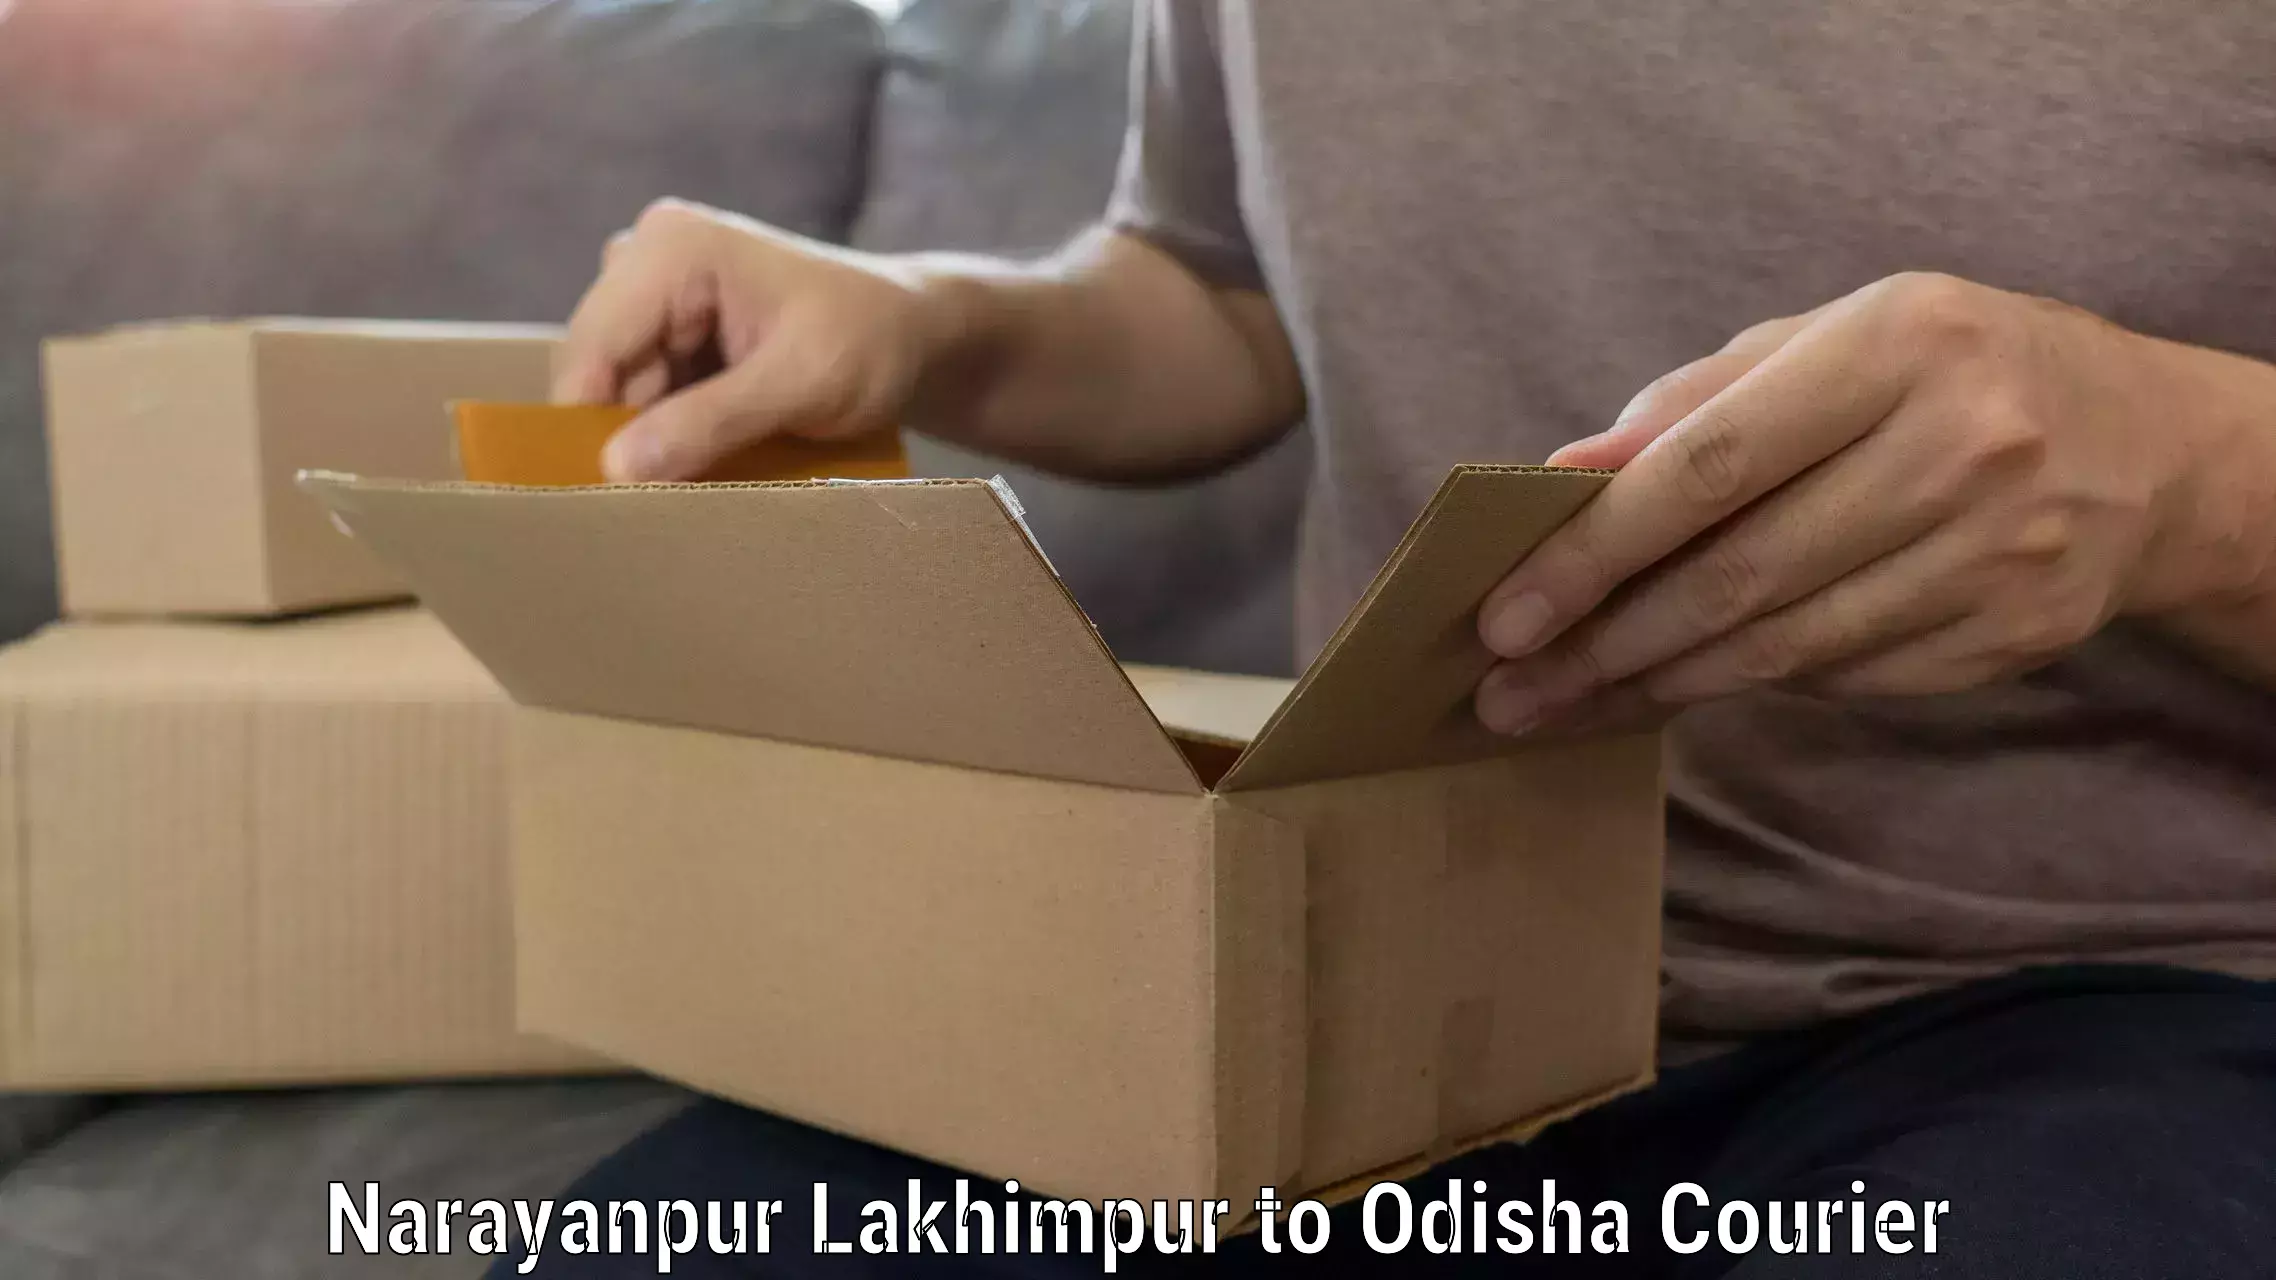 Quality moving company Narayanpur Lakhimpur to Balikuda